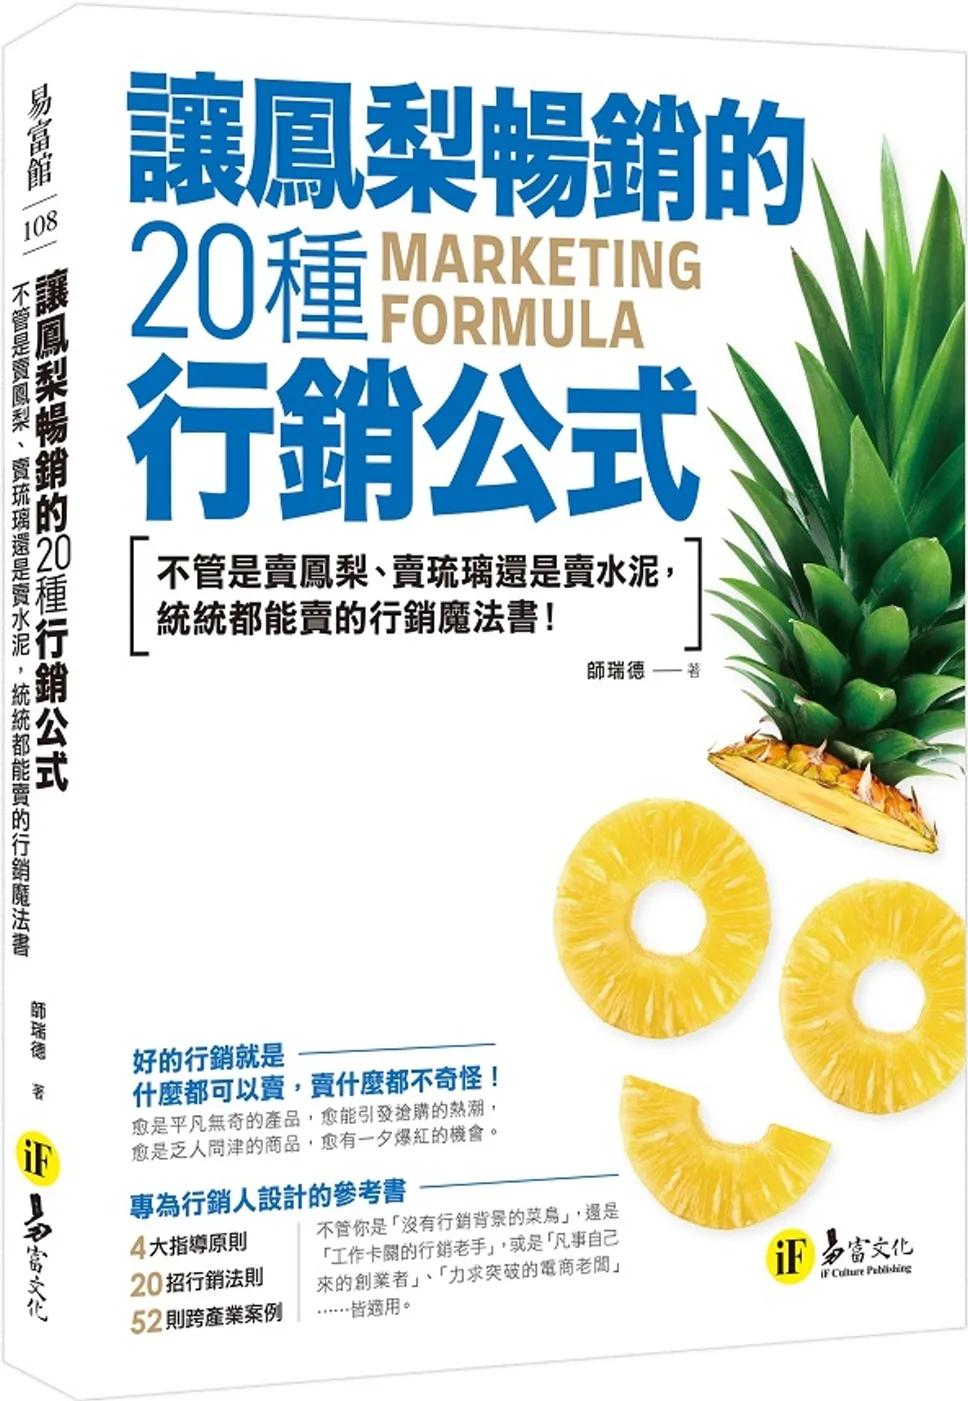 讓鳳梨暢銷的20種行銷公式：不管是賣?梨、賣琉璃還是賣水泥，統統都能賣的行銷魔法書